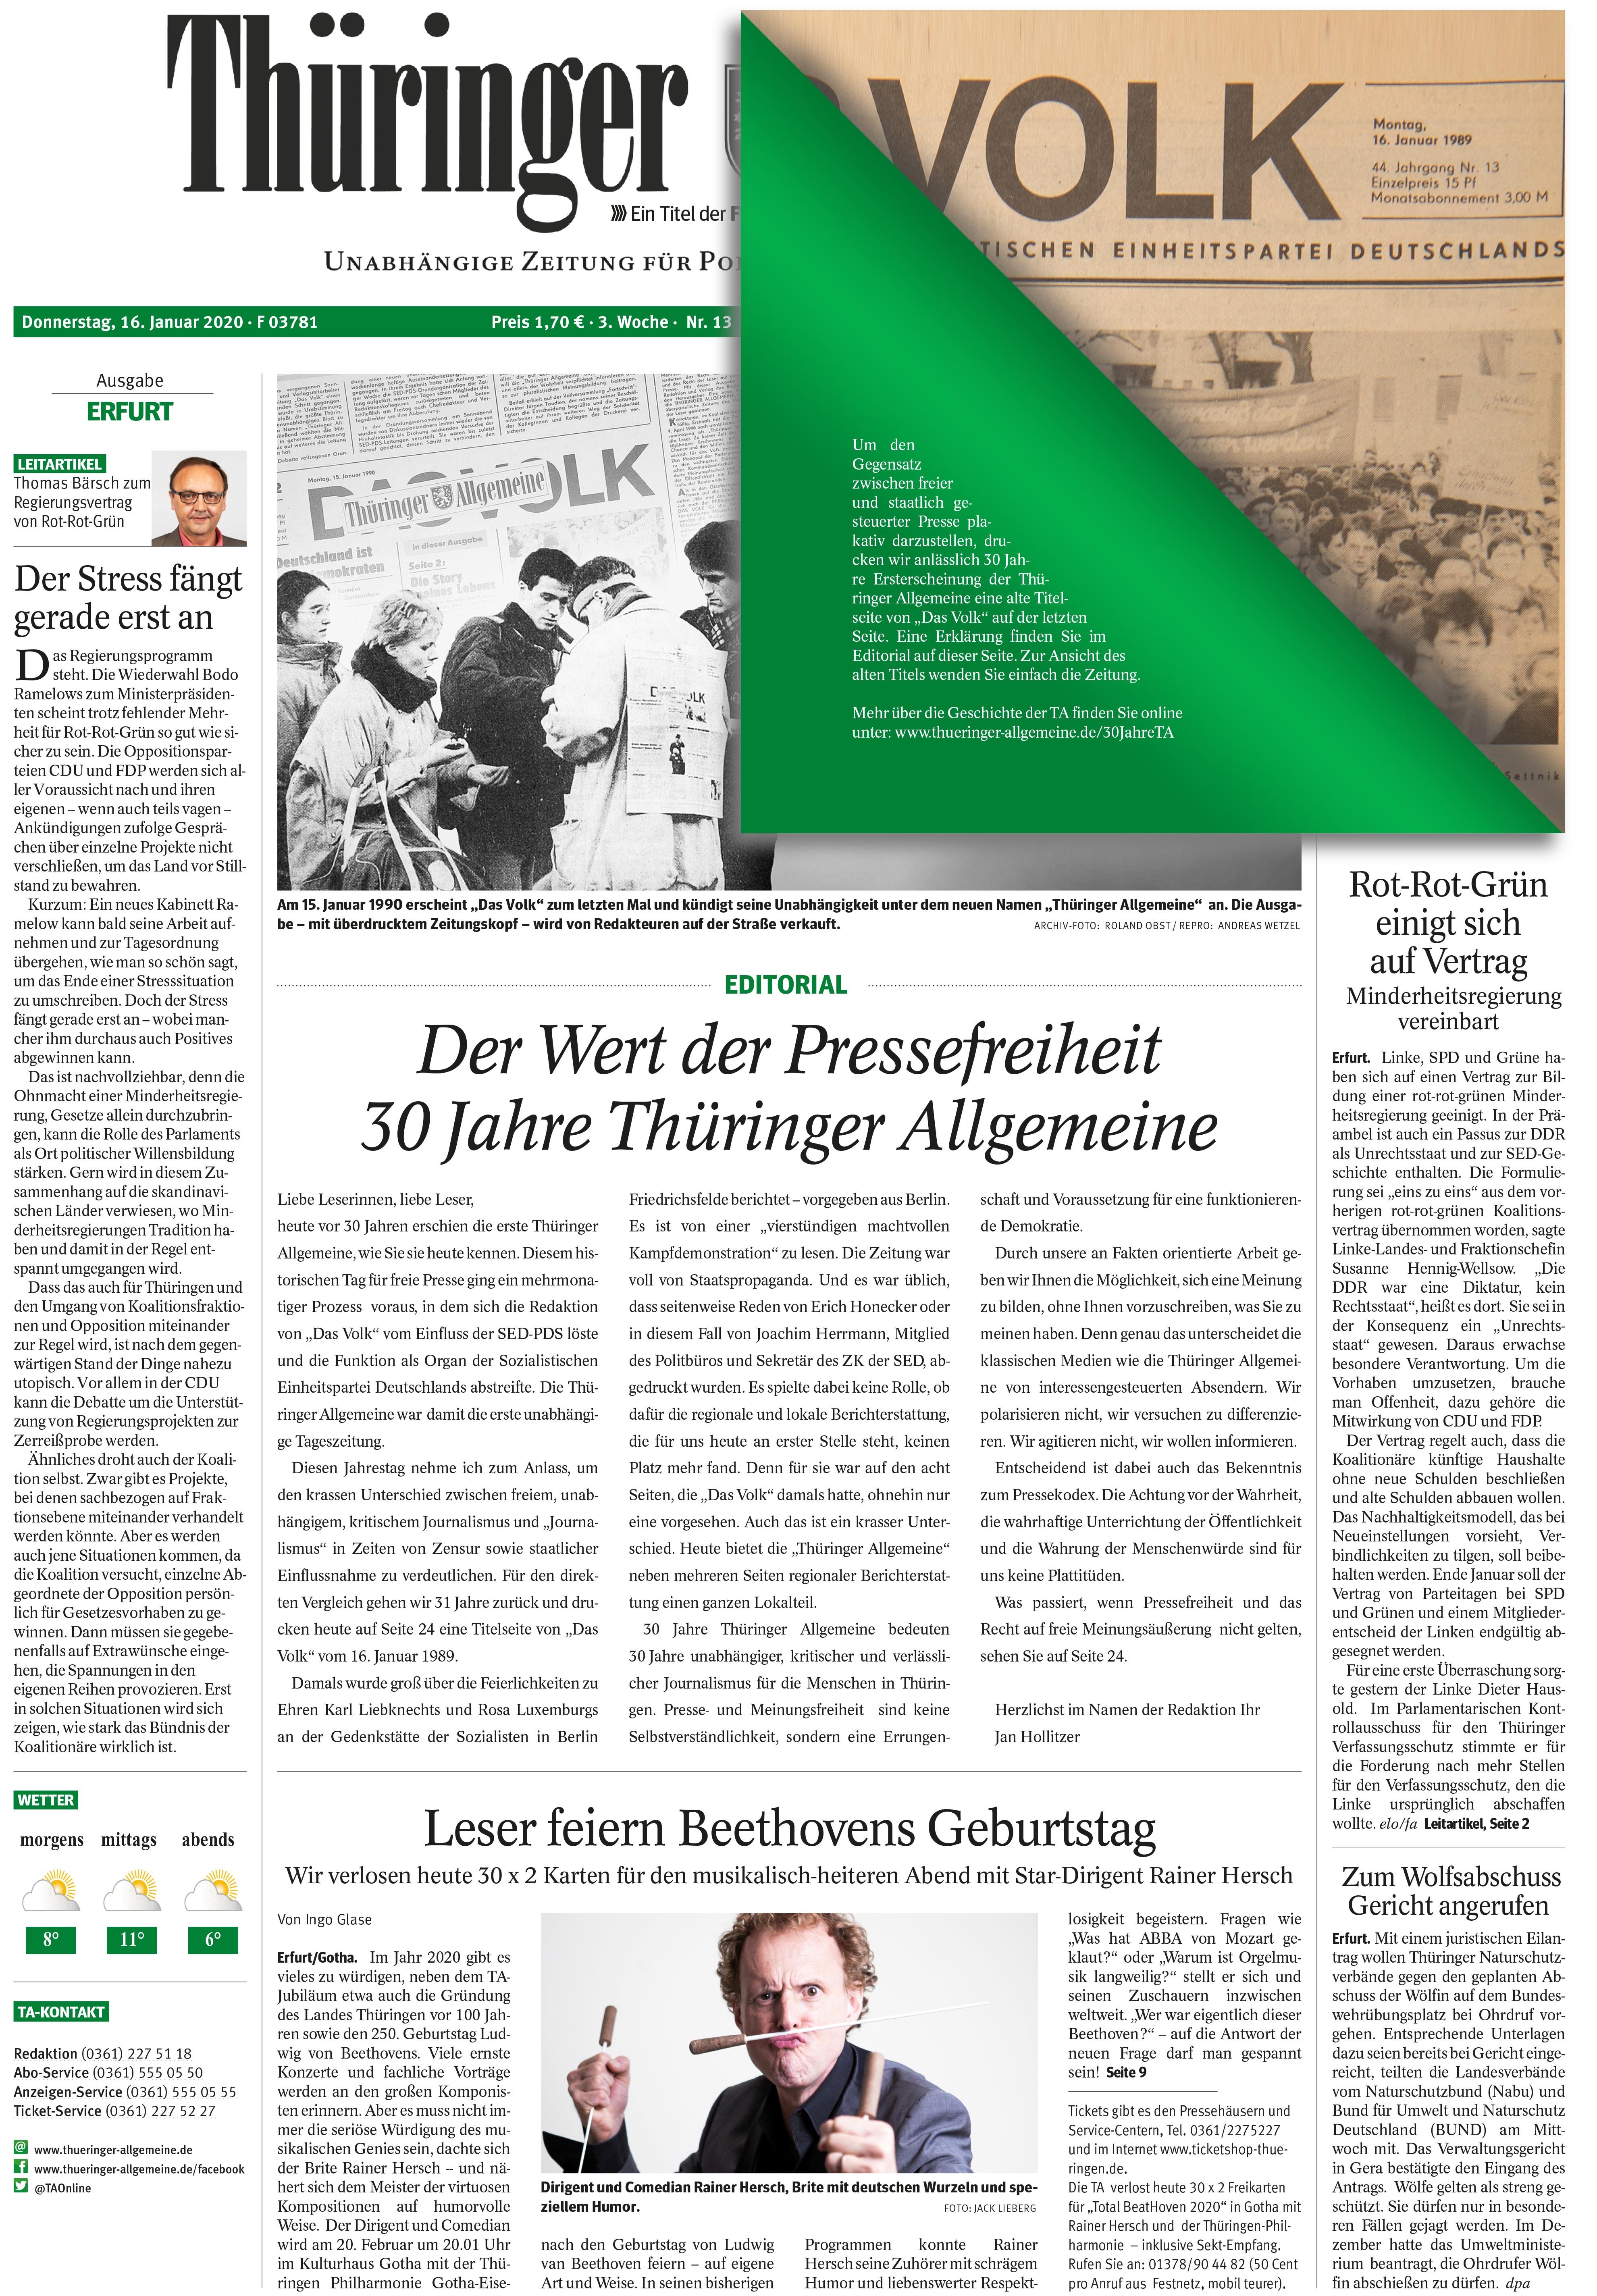 Thüringer Allgemeine feiert 30. Geburtstag: Die Zeitungen